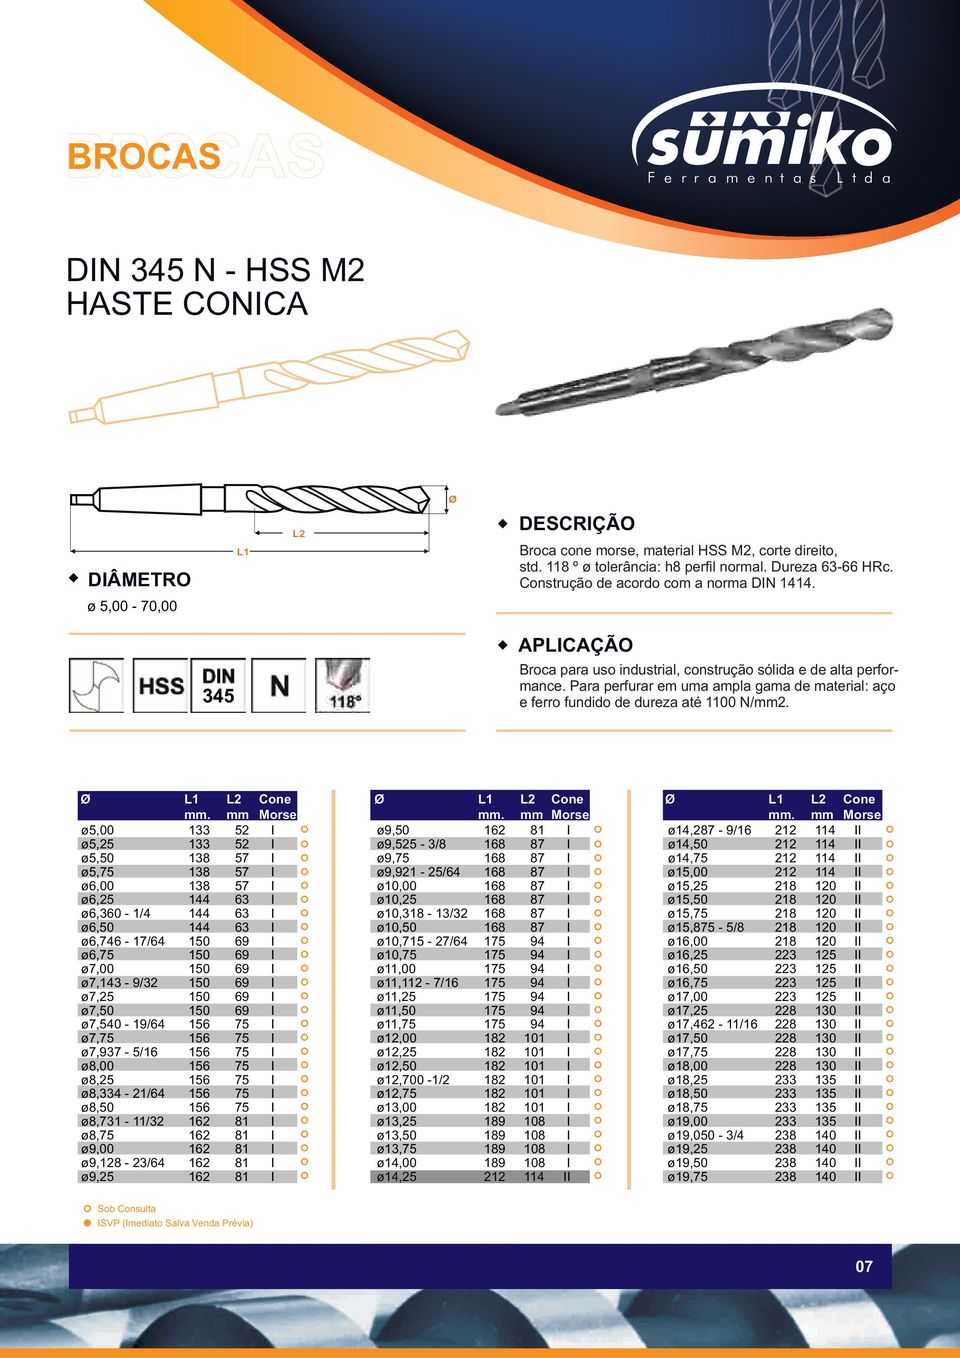 Para perfurar em uma ampla gama de material: aço e ferro fundido de dureza até 1100 N/mm2. Ø L1 L2 Cone mm.